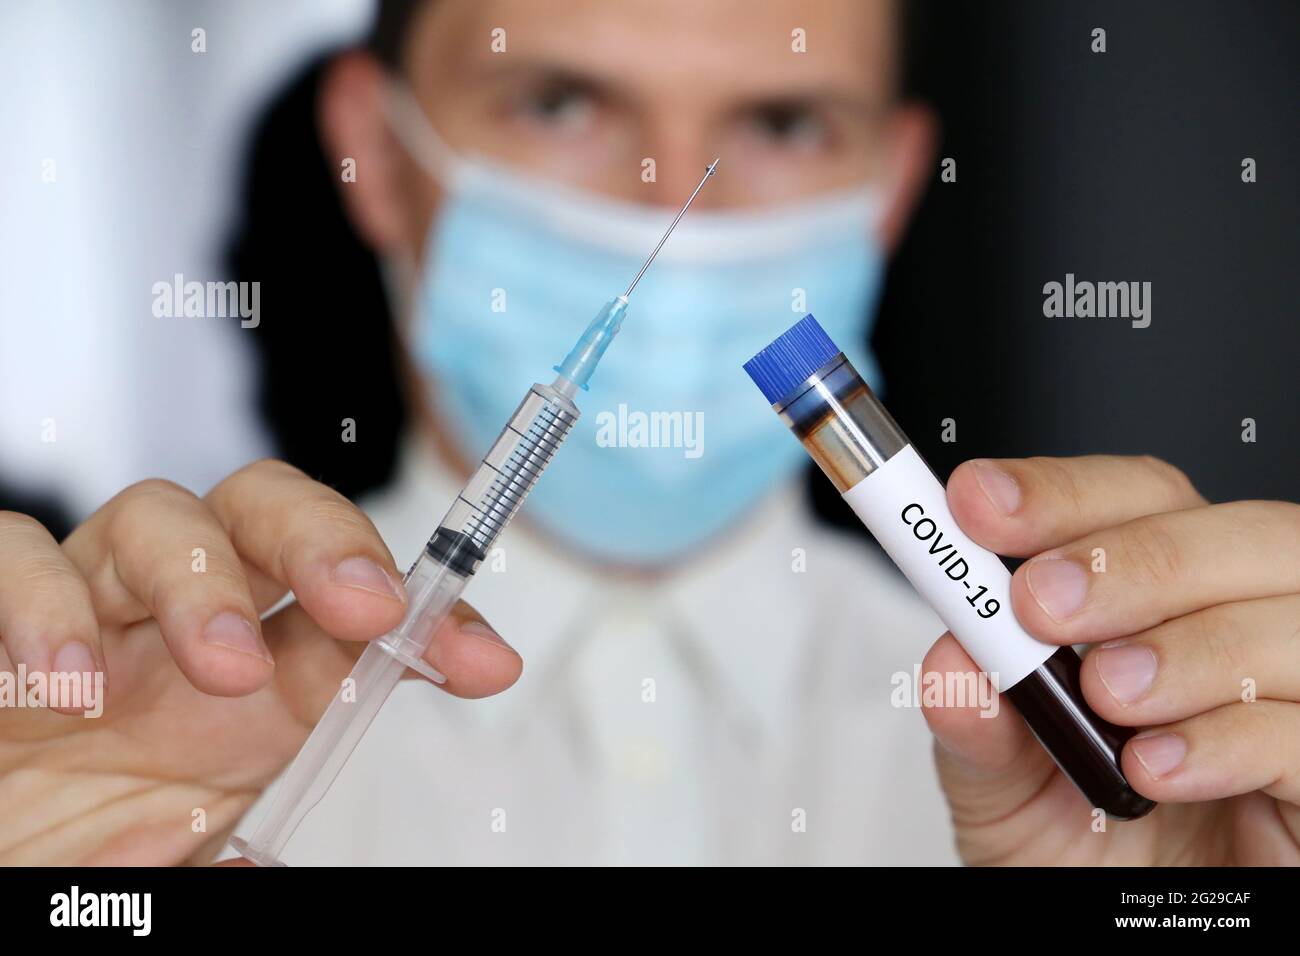 Medico in maschera con siringa e campione di sangue di covid-19 in provetta in mani. Concetto di vaccinazione e test medici Foto Stock